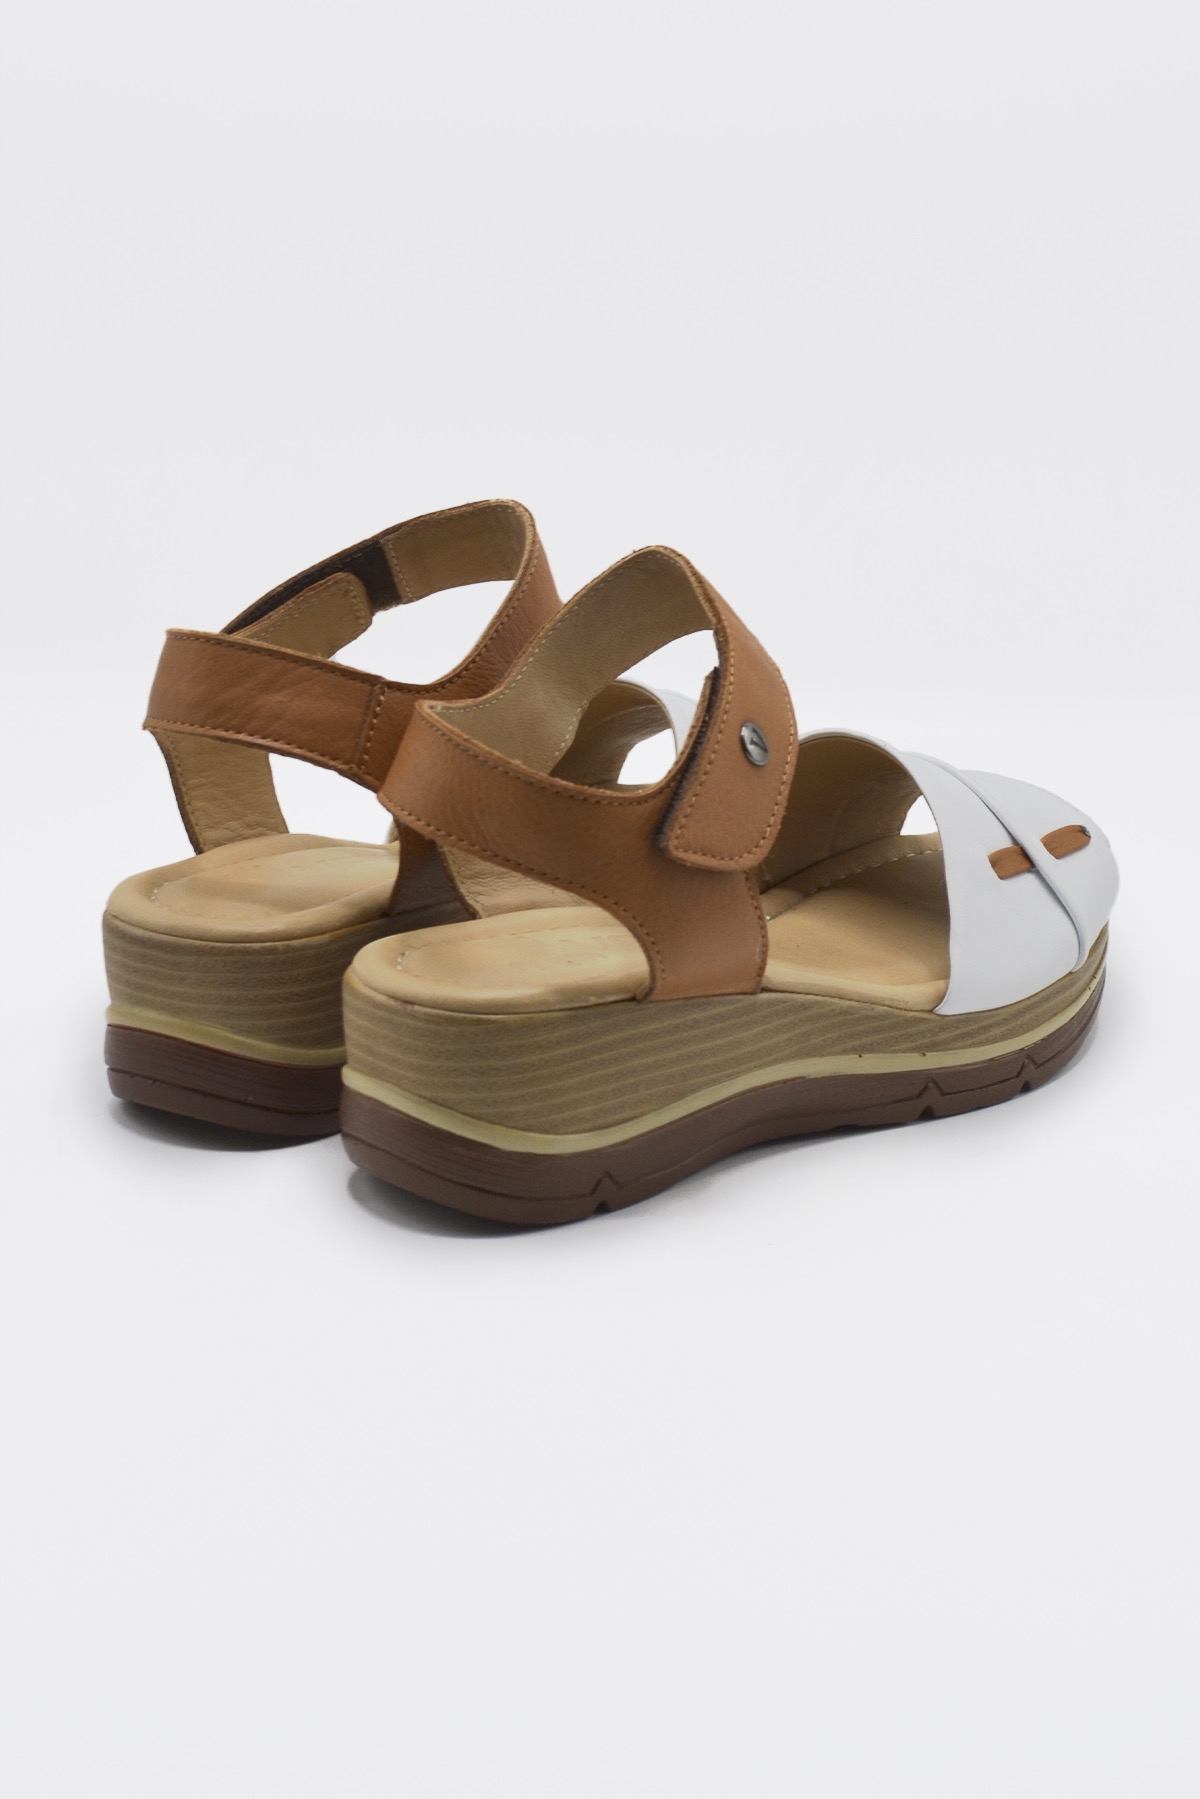 Kadın Comfort Deri Sandalet Beyaz 2313402Y - Thumbnail